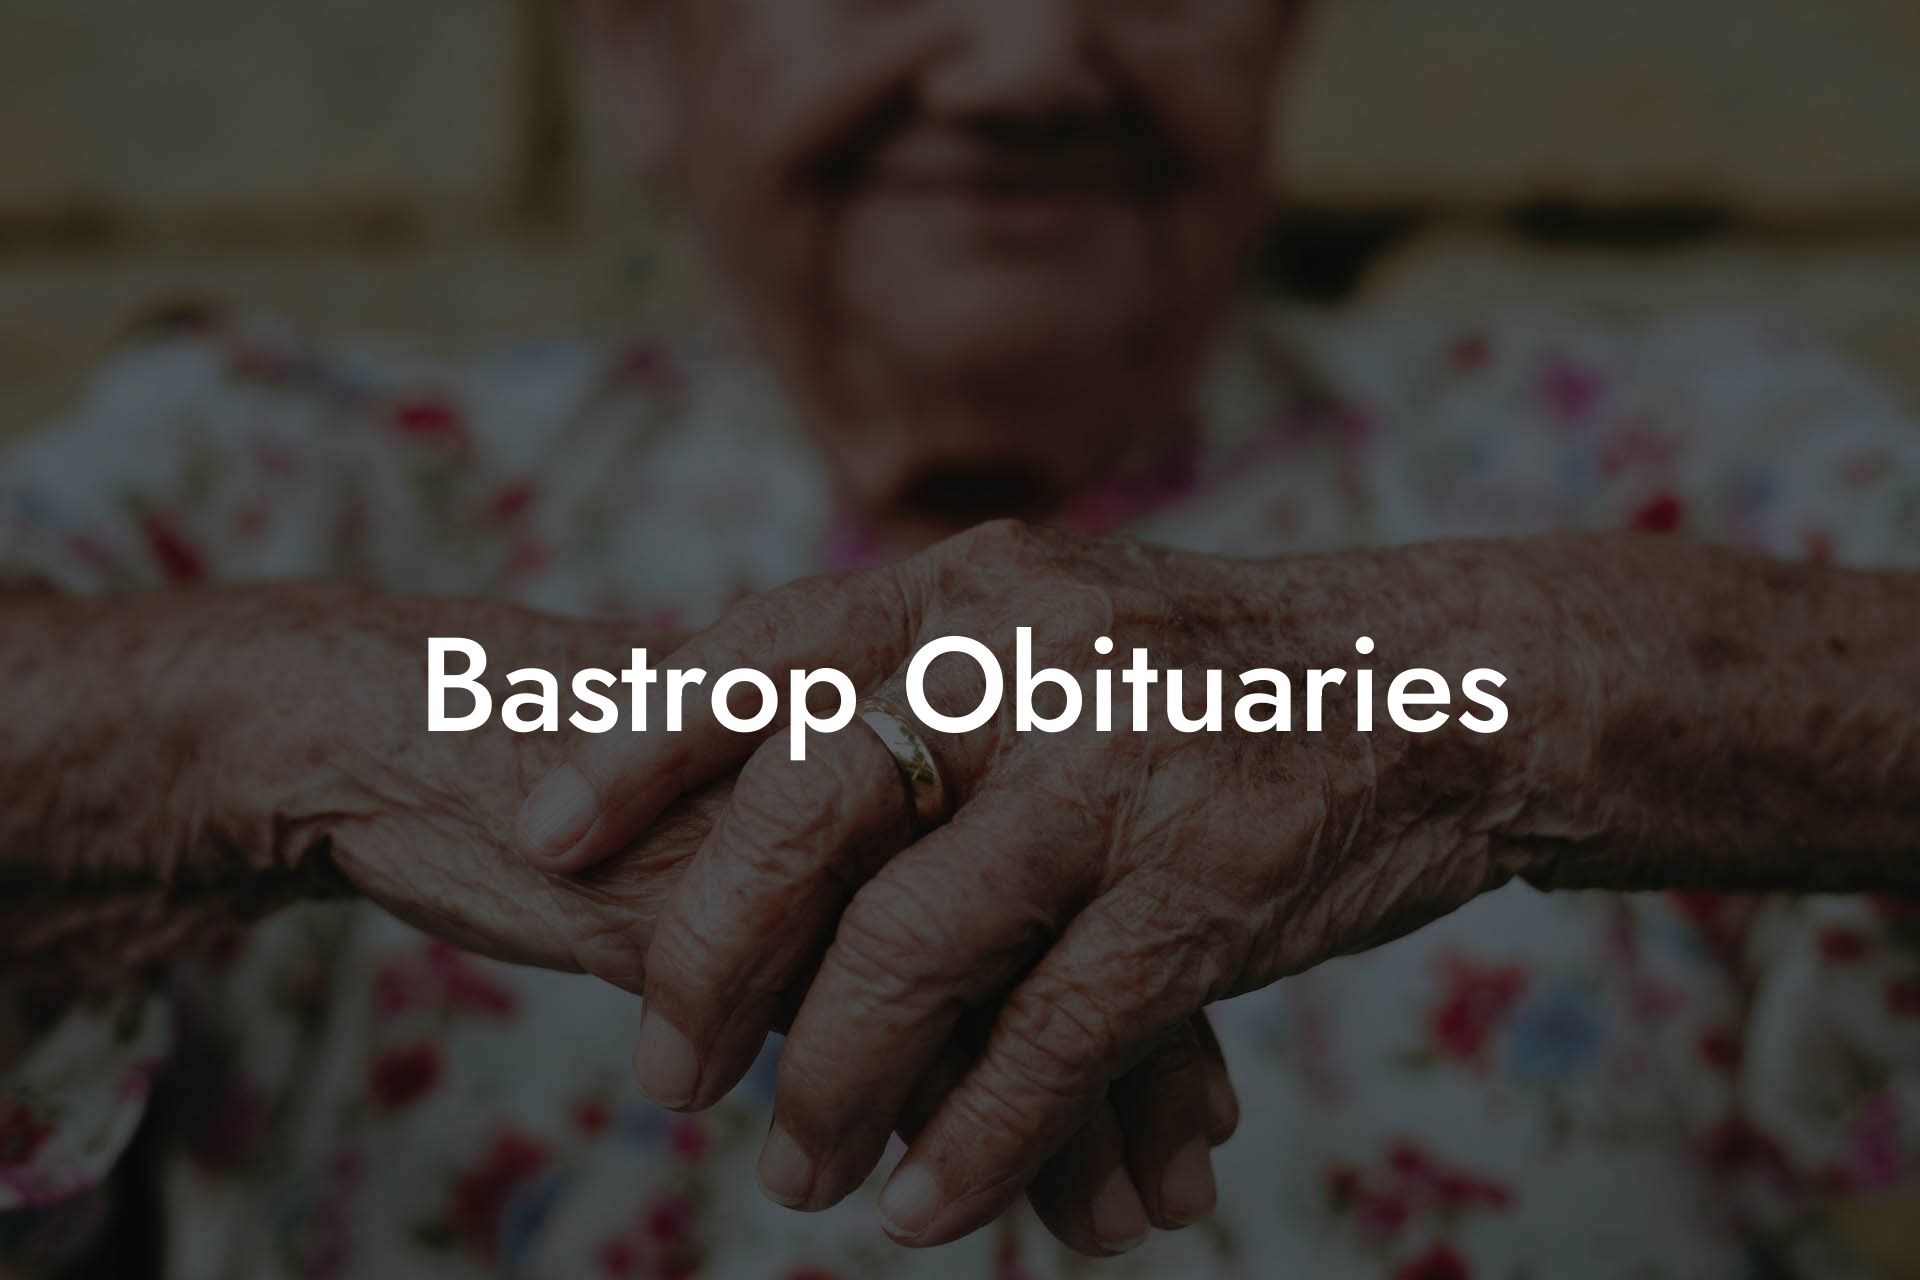 Bastrop Obituaries